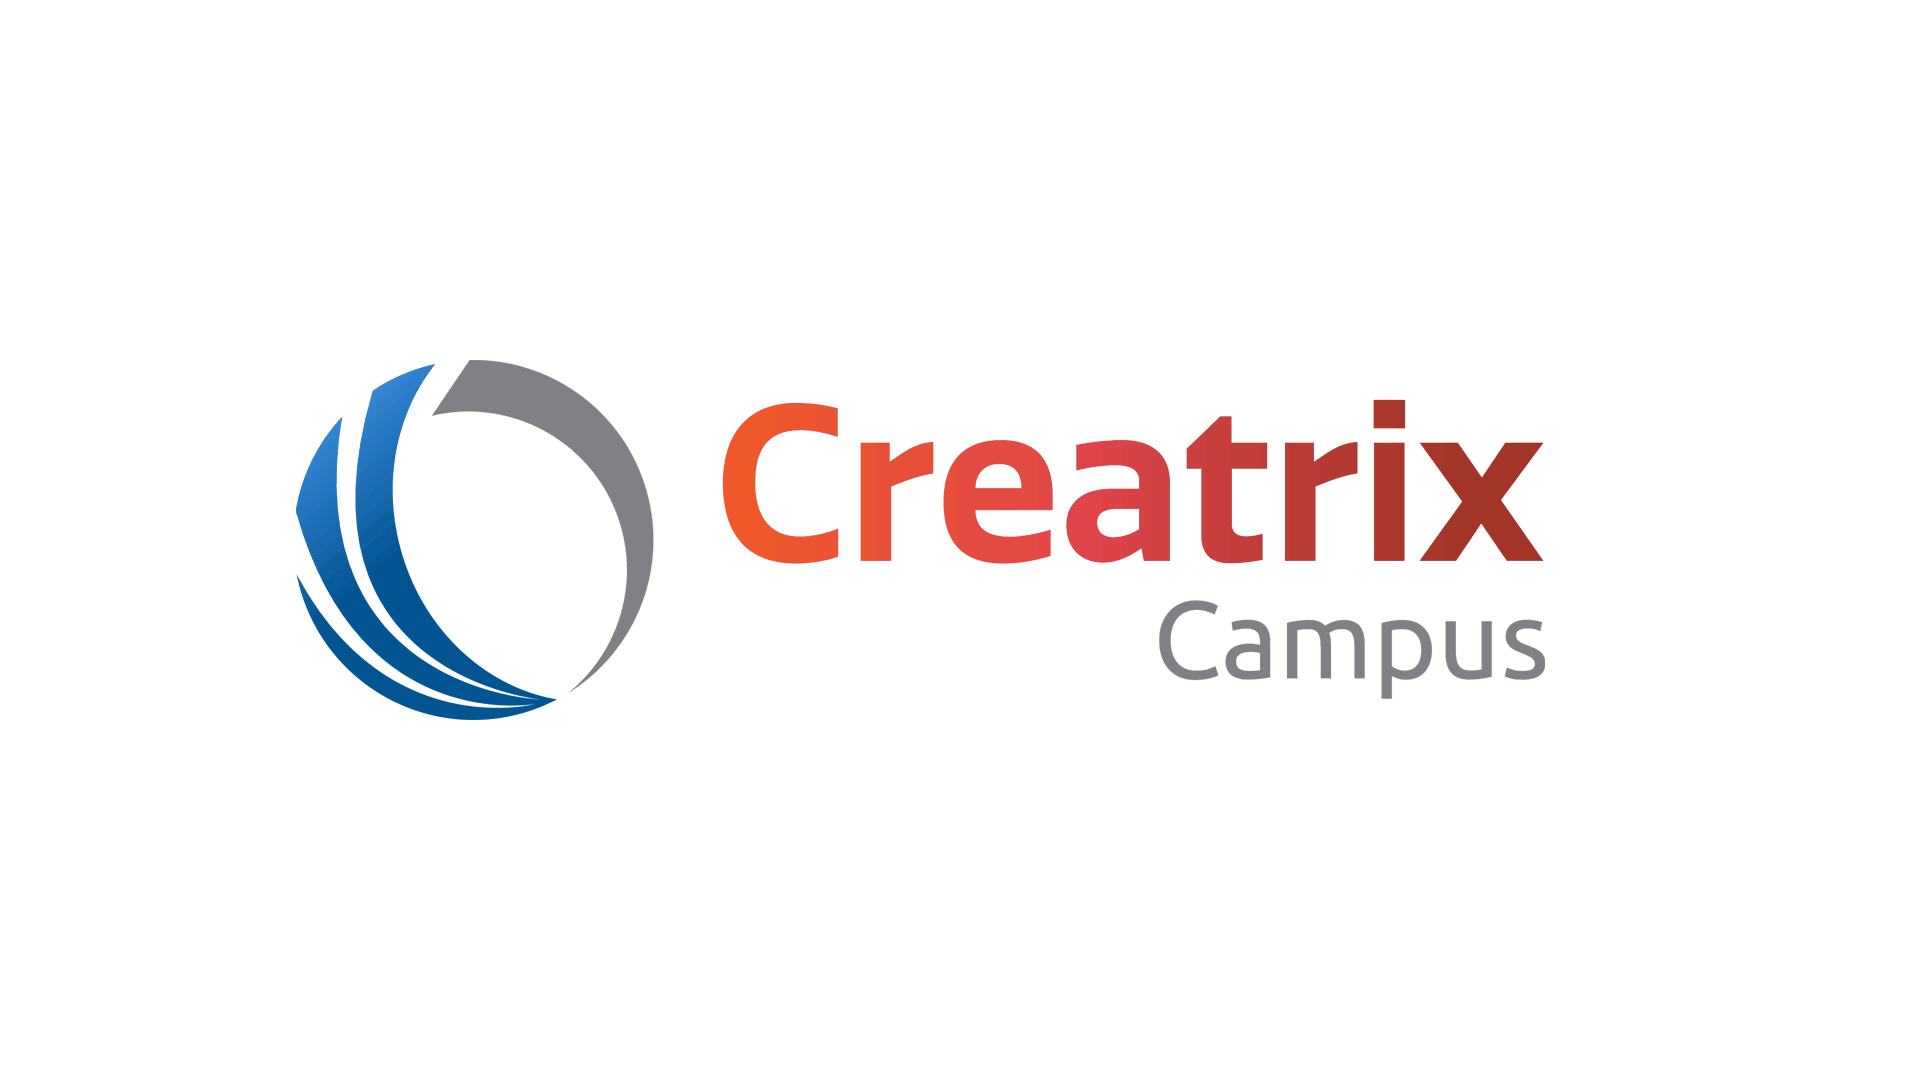 Creatrix Campus